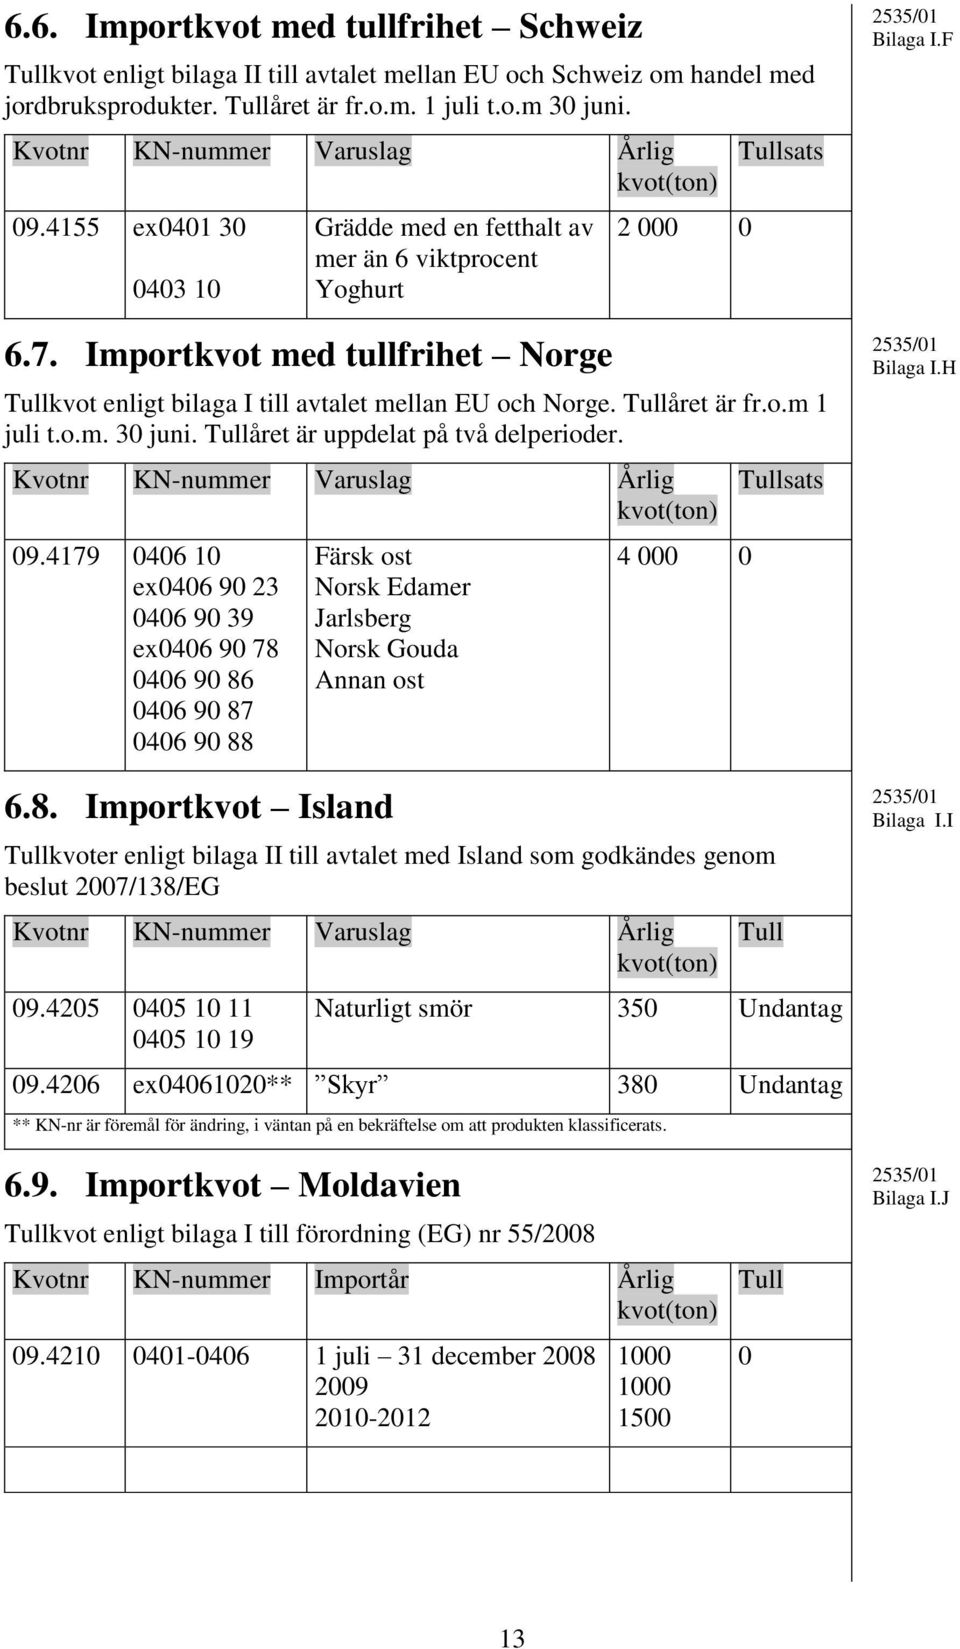 Importkvot med tullfrihet Norge 2 000 0 Tullsats Tullkvot enligt bilaga I till avtalet mellan EU och Norge. Tullåret är fr.o.m 1 juli t.o.m. 30 juni. Tullåret är uppdelat på två delperioder.